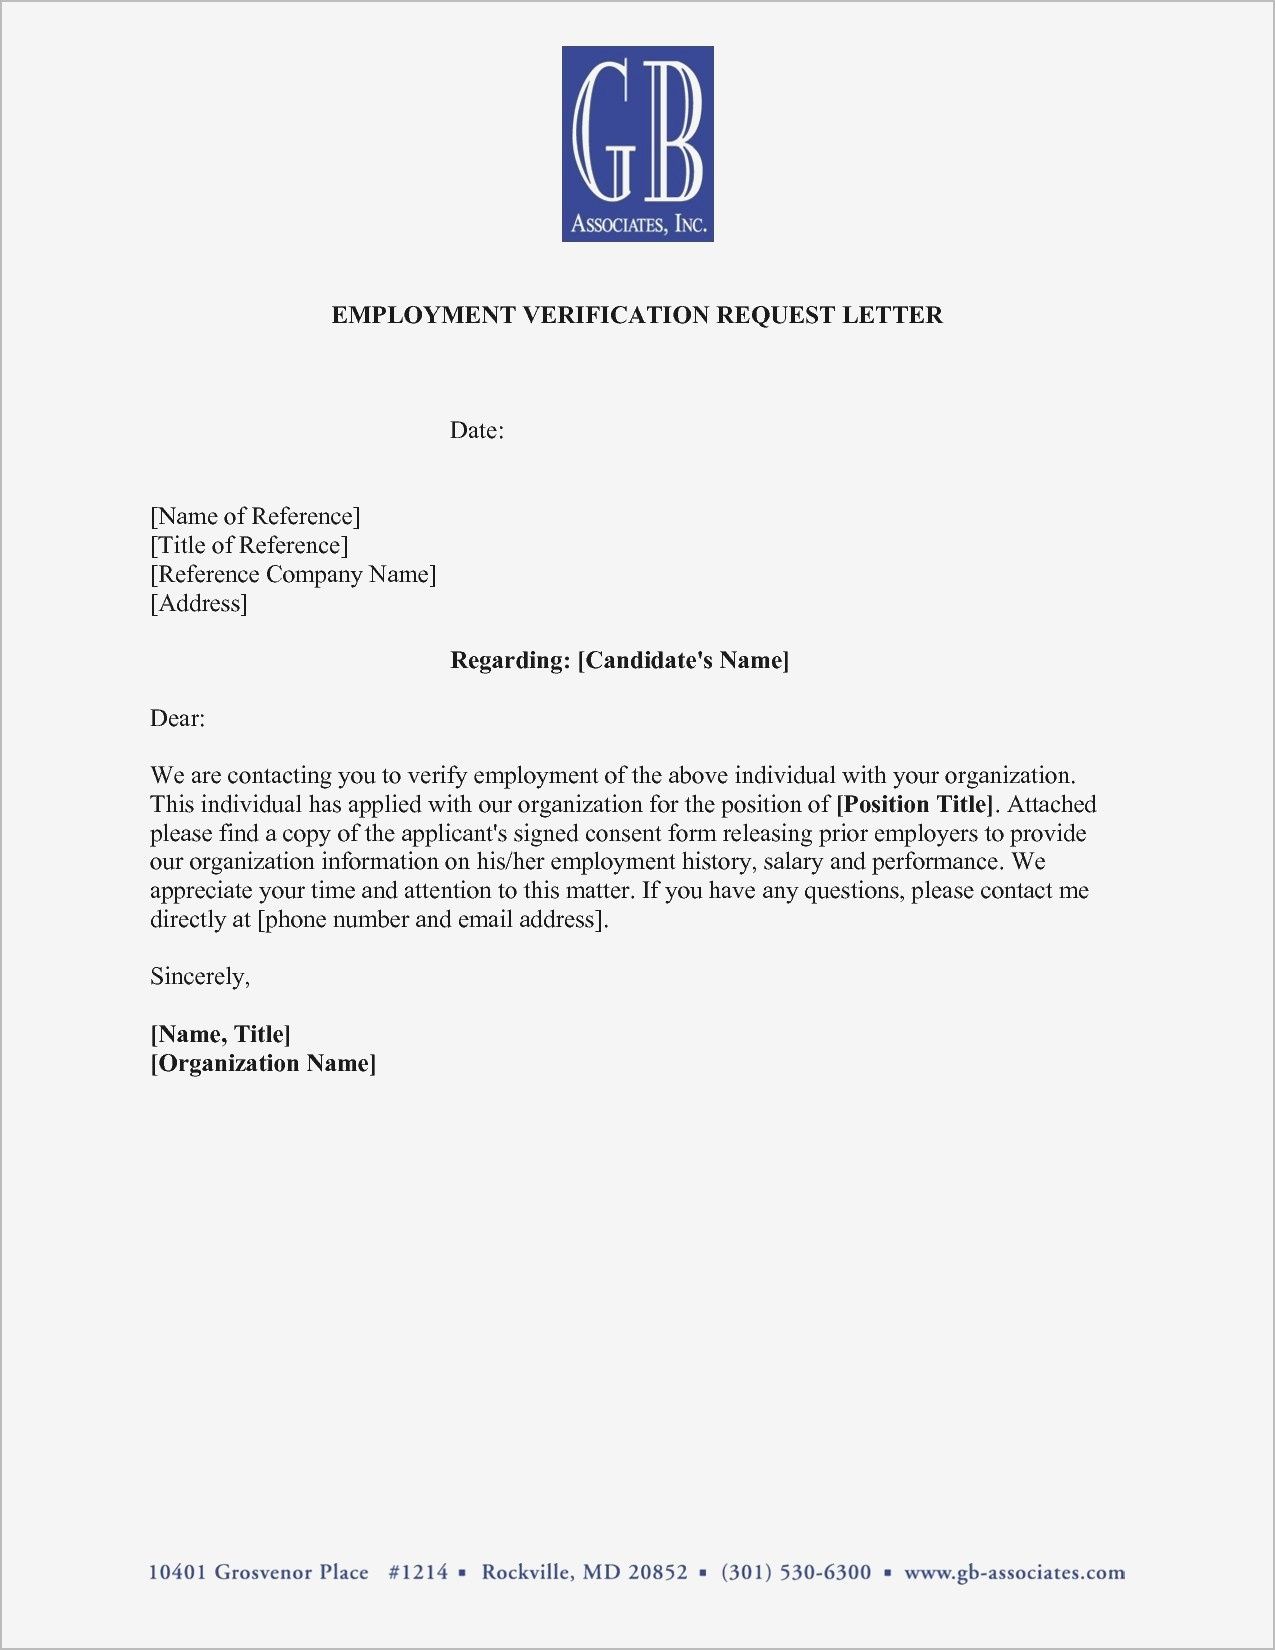 Employment Verification Letter